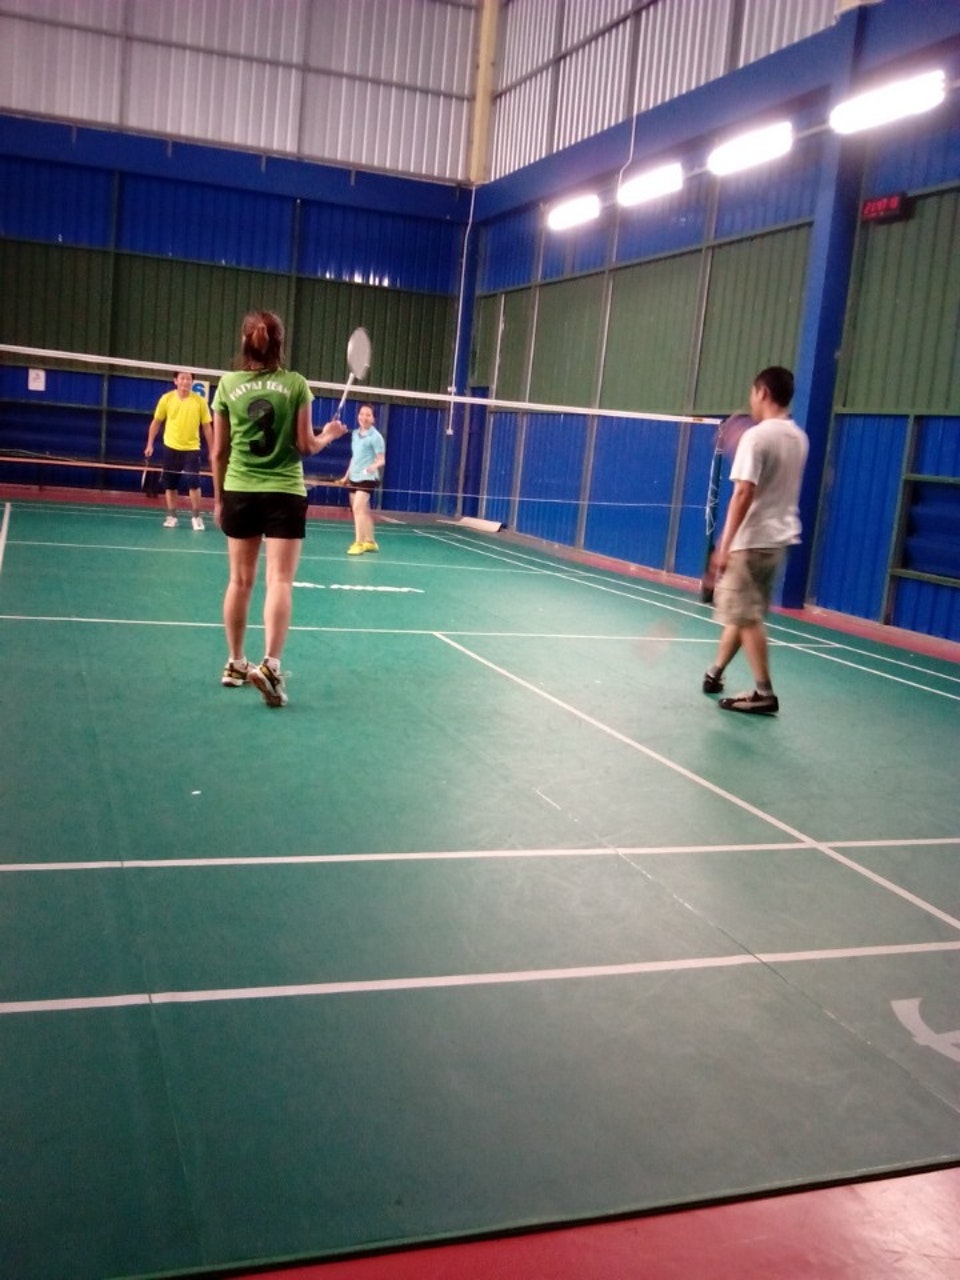 สนามแบดมินตัน - KTR Badminton 